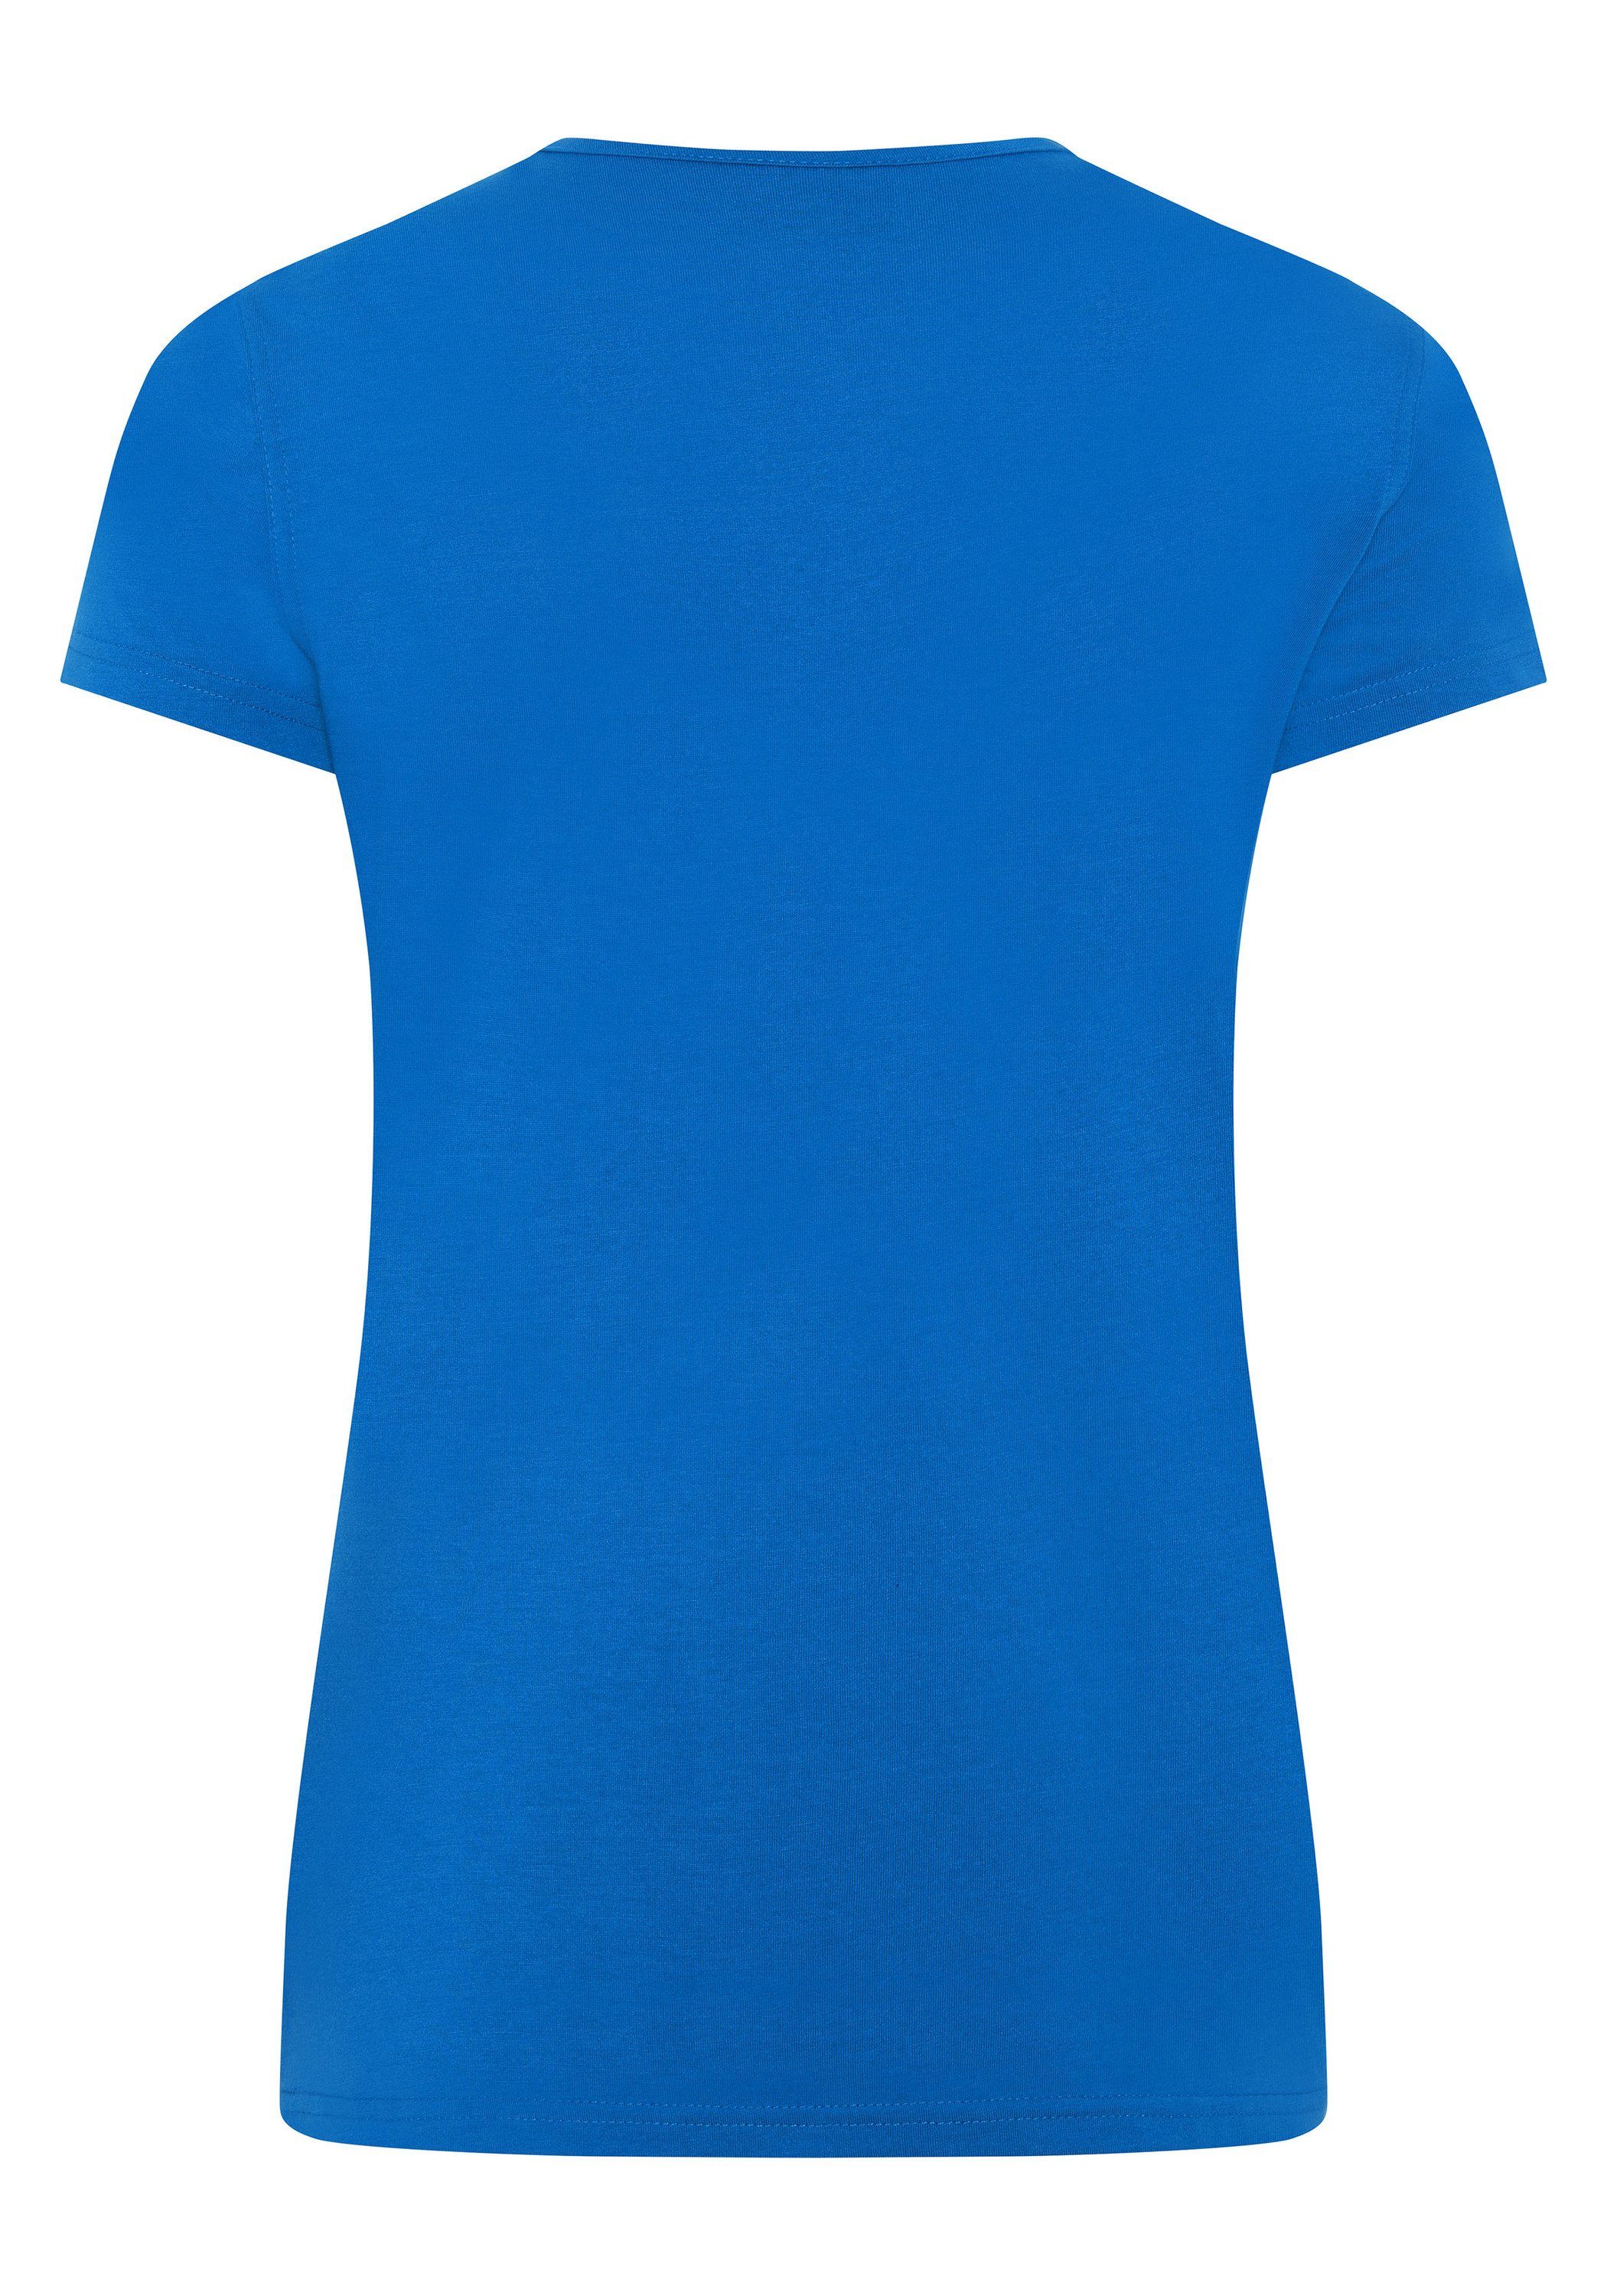 Expand blau T-Shirt Farben vielen in royal